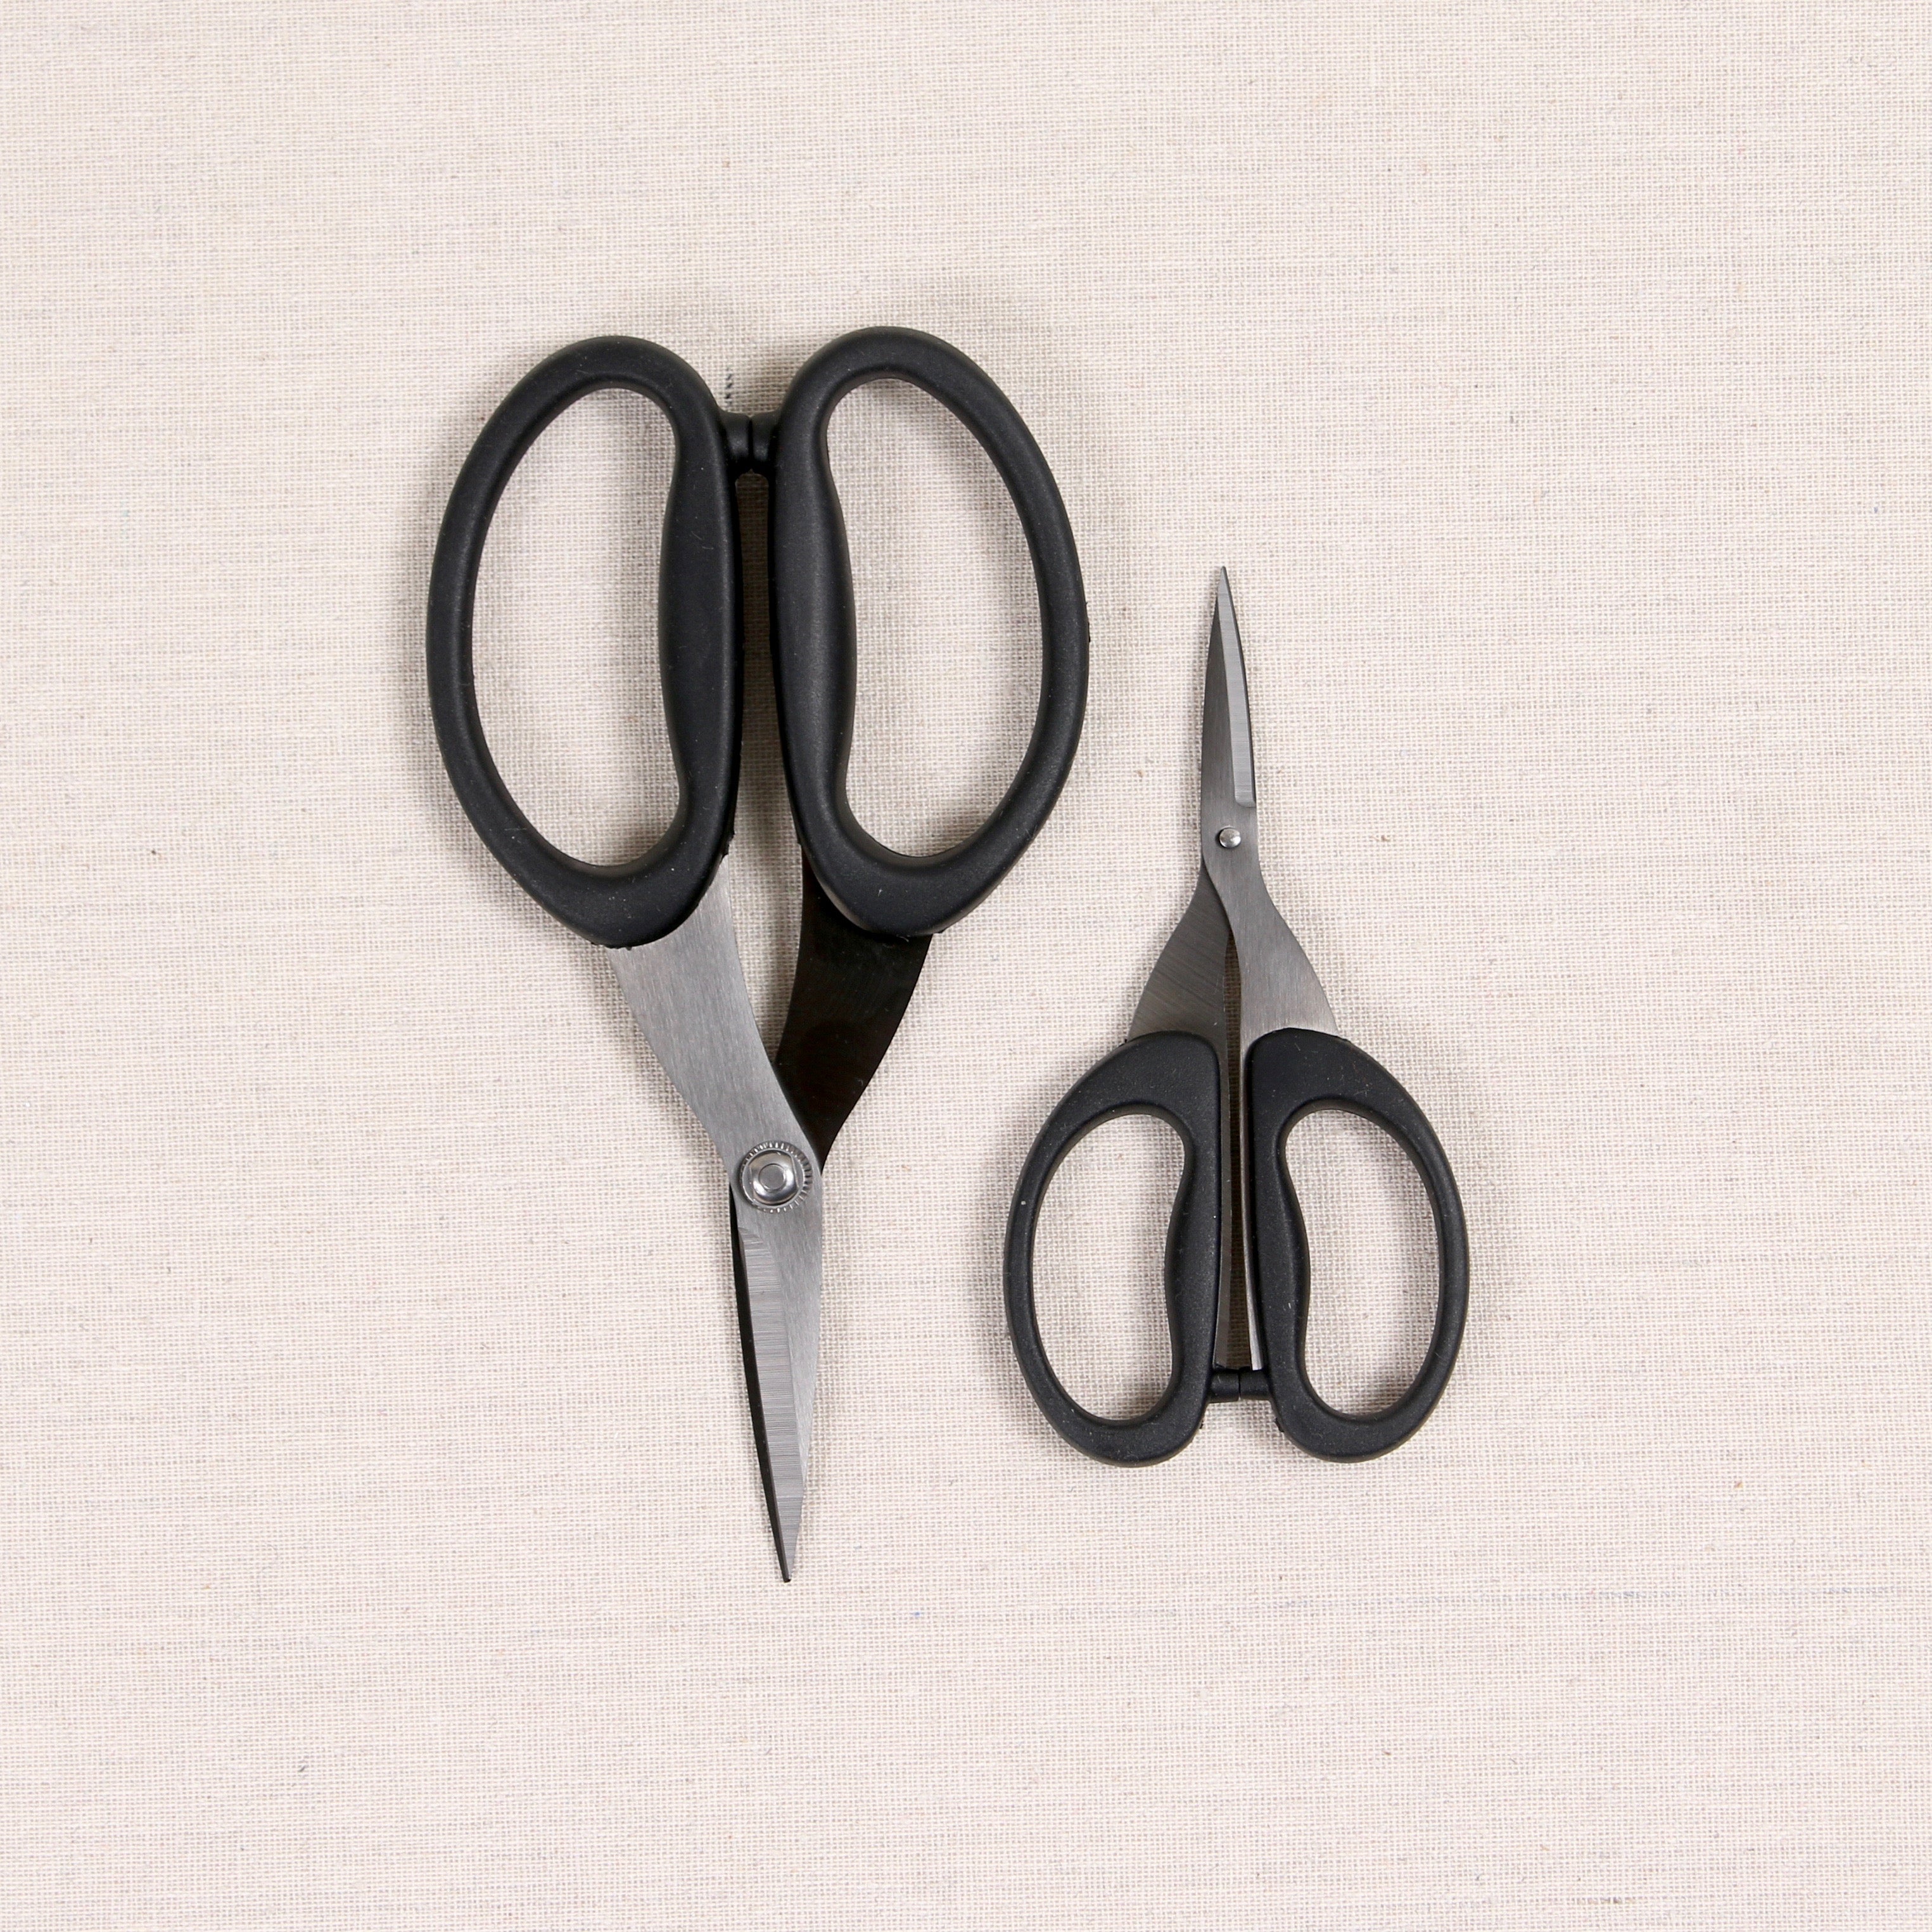 Titanium Scissors - Fabric Scissors - Craft Scissors - Dream Products